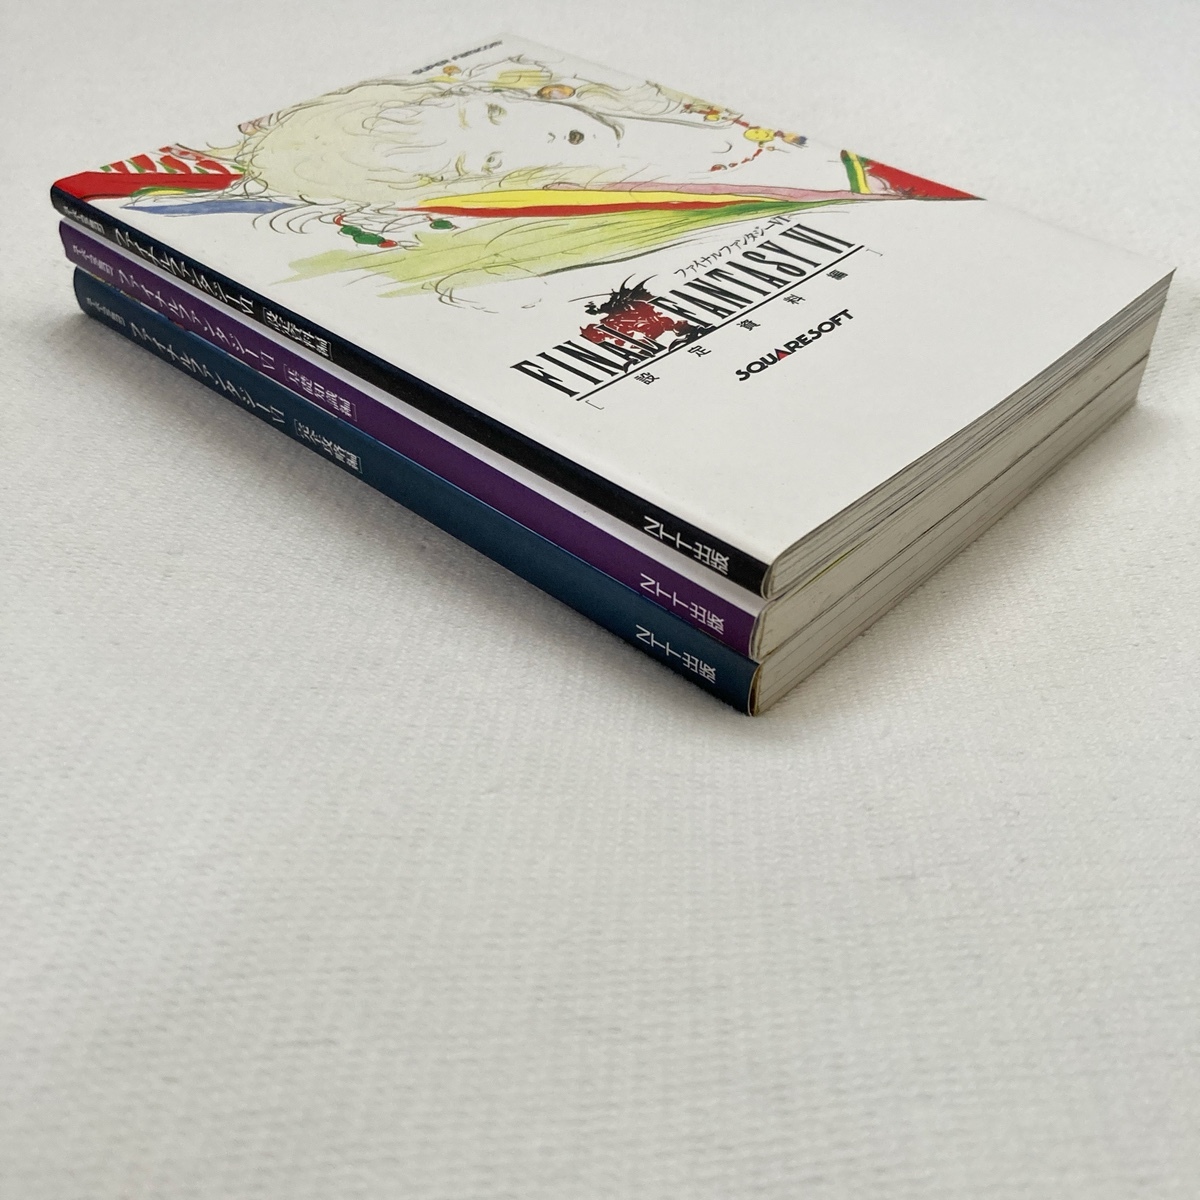  Super Famicom Final Fantasy VI гид все 3 шт. / установка материалы сборник / основа знания сборник / совершенно .. сборник / Final Fantasy FF6